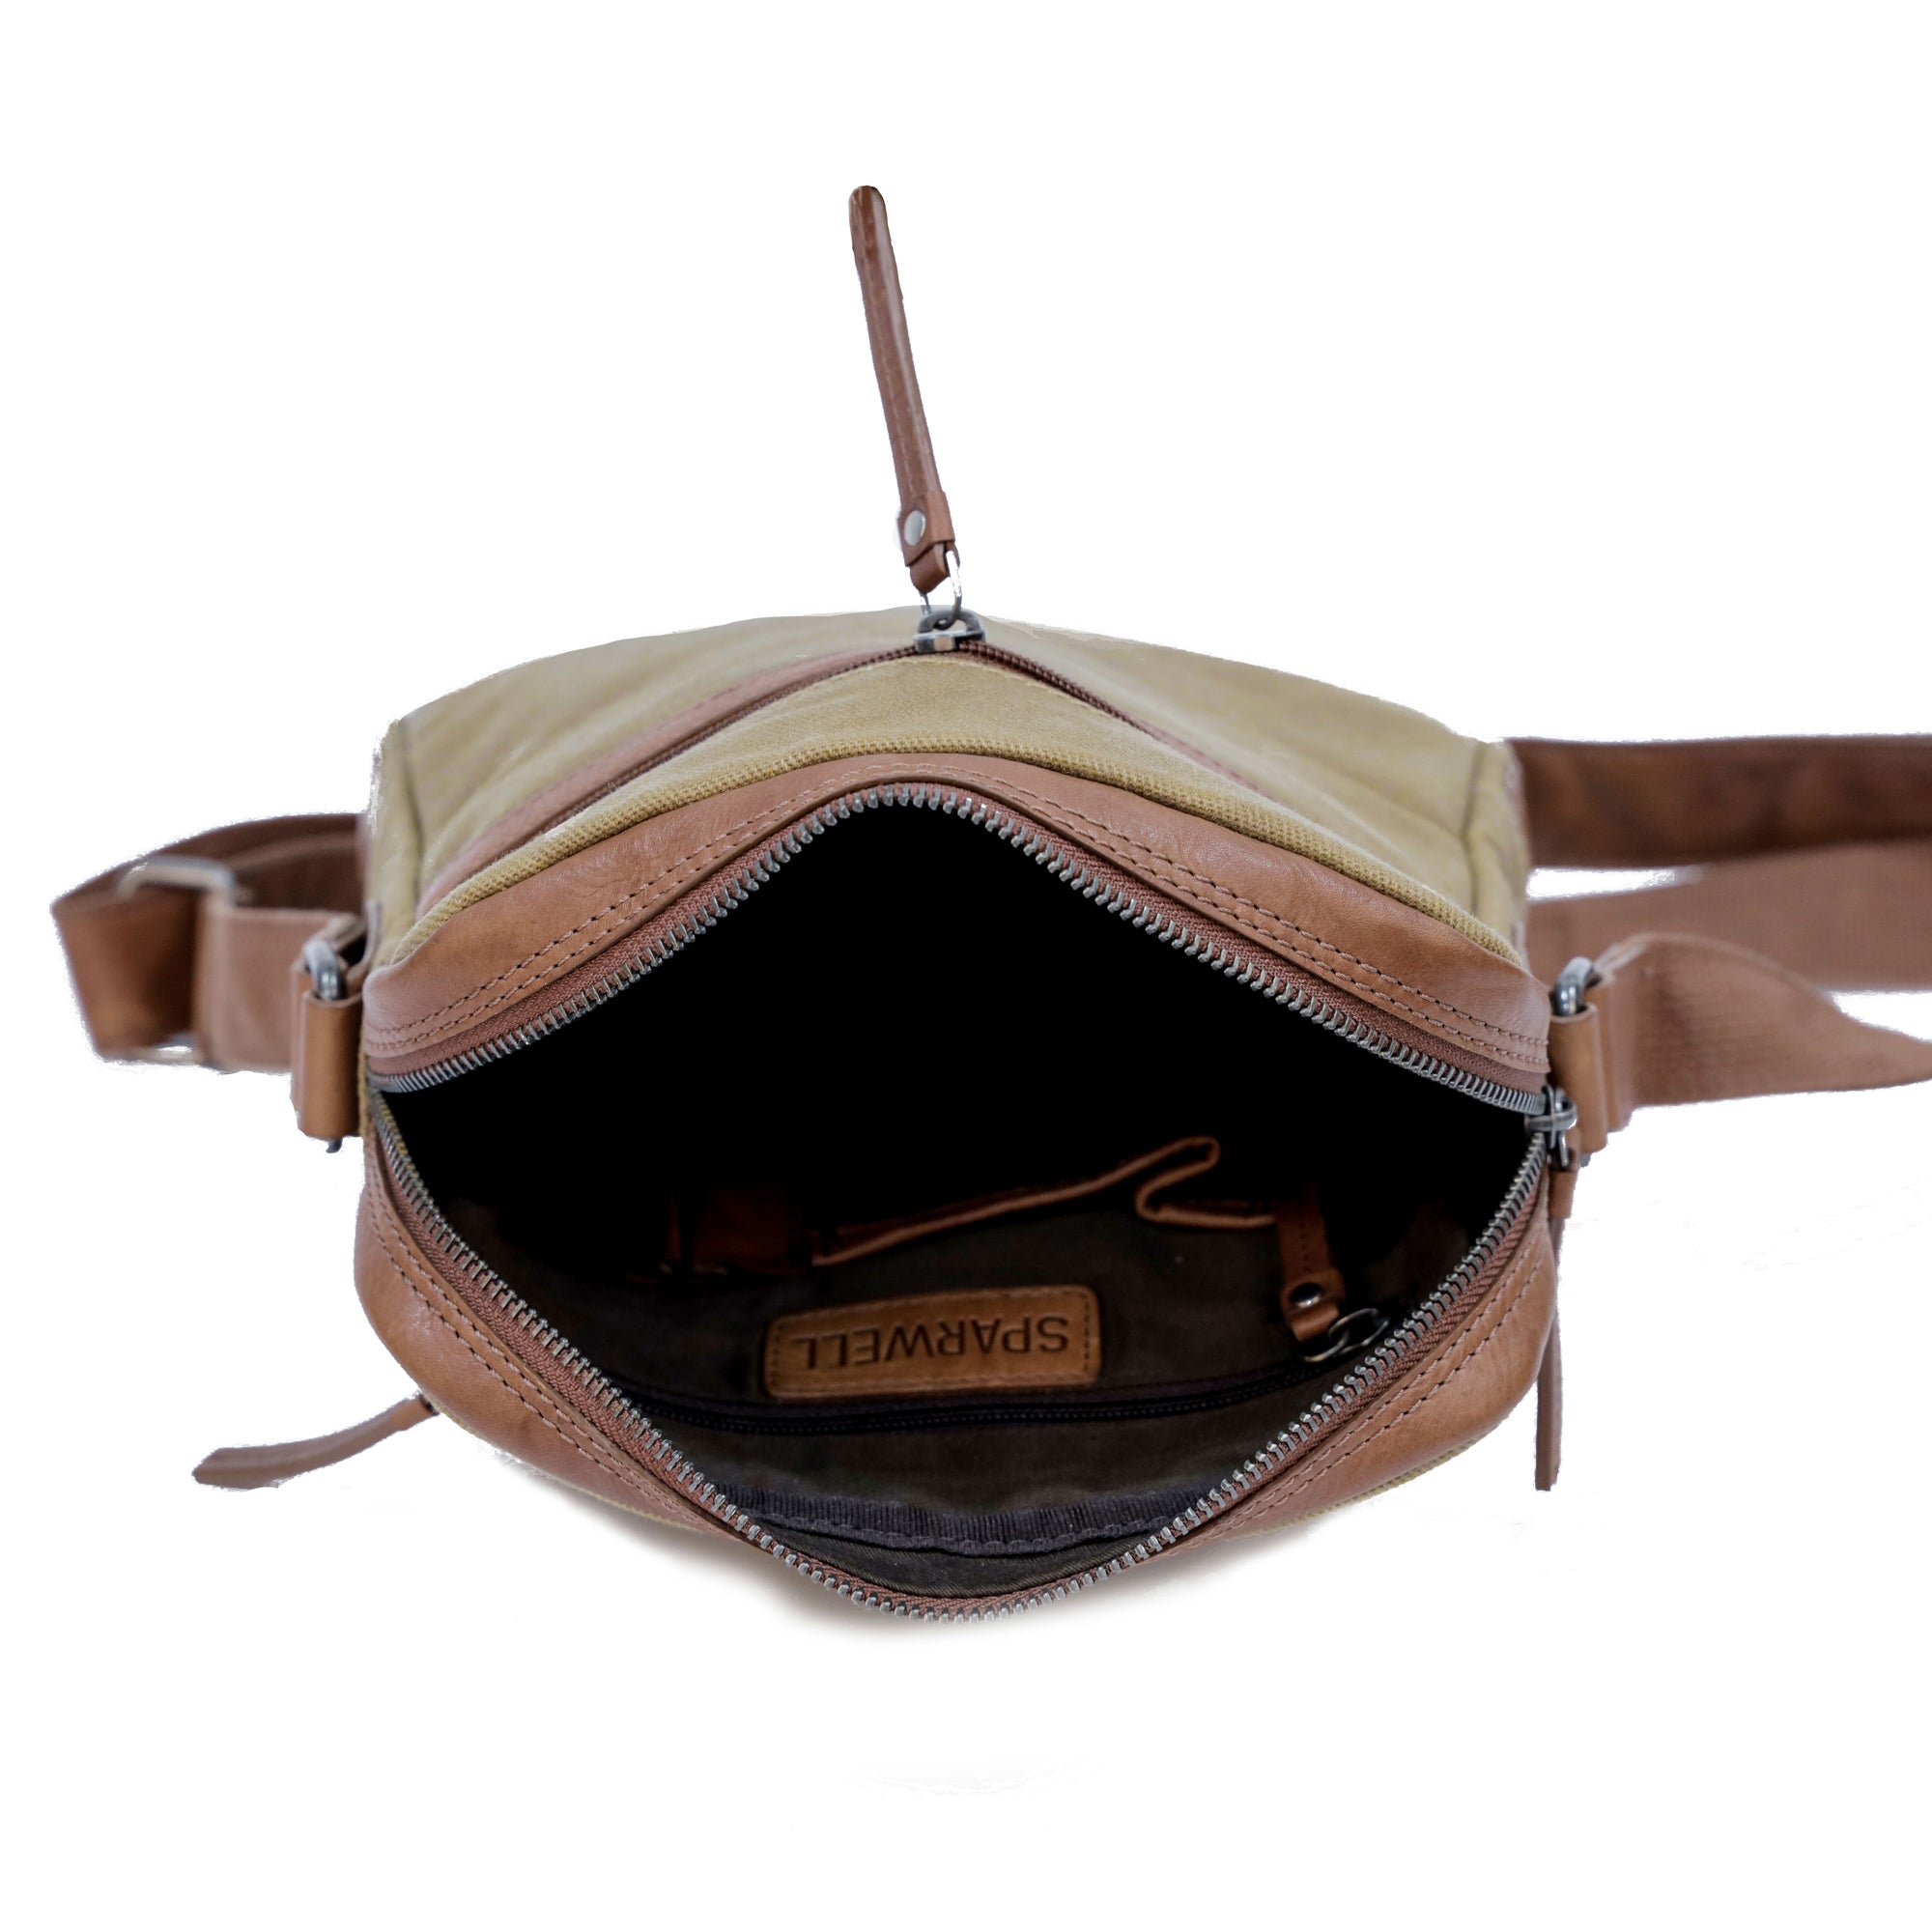 Find Art - Leather shoulder bag / crossbody